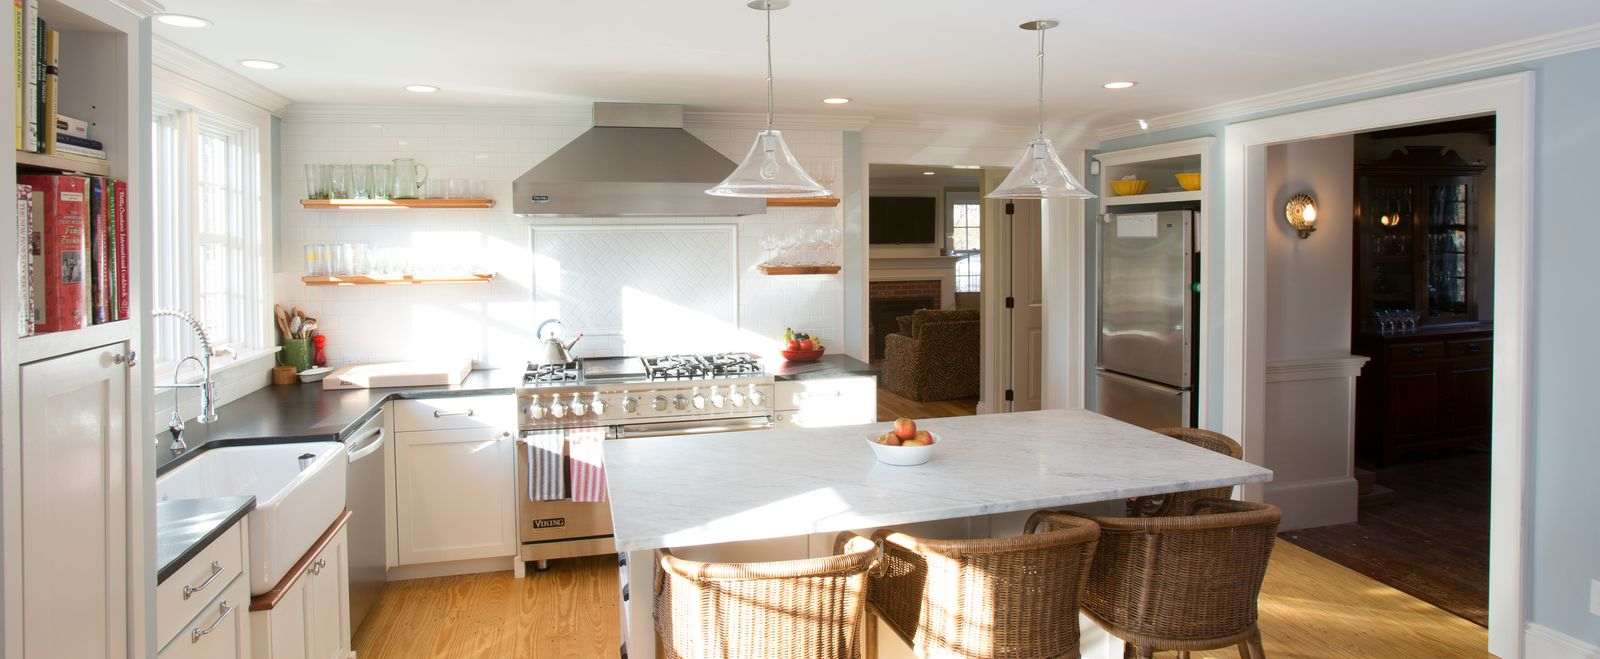 White kitchen renovWhite kitchen remodel with white tile backsplash and kitchen island